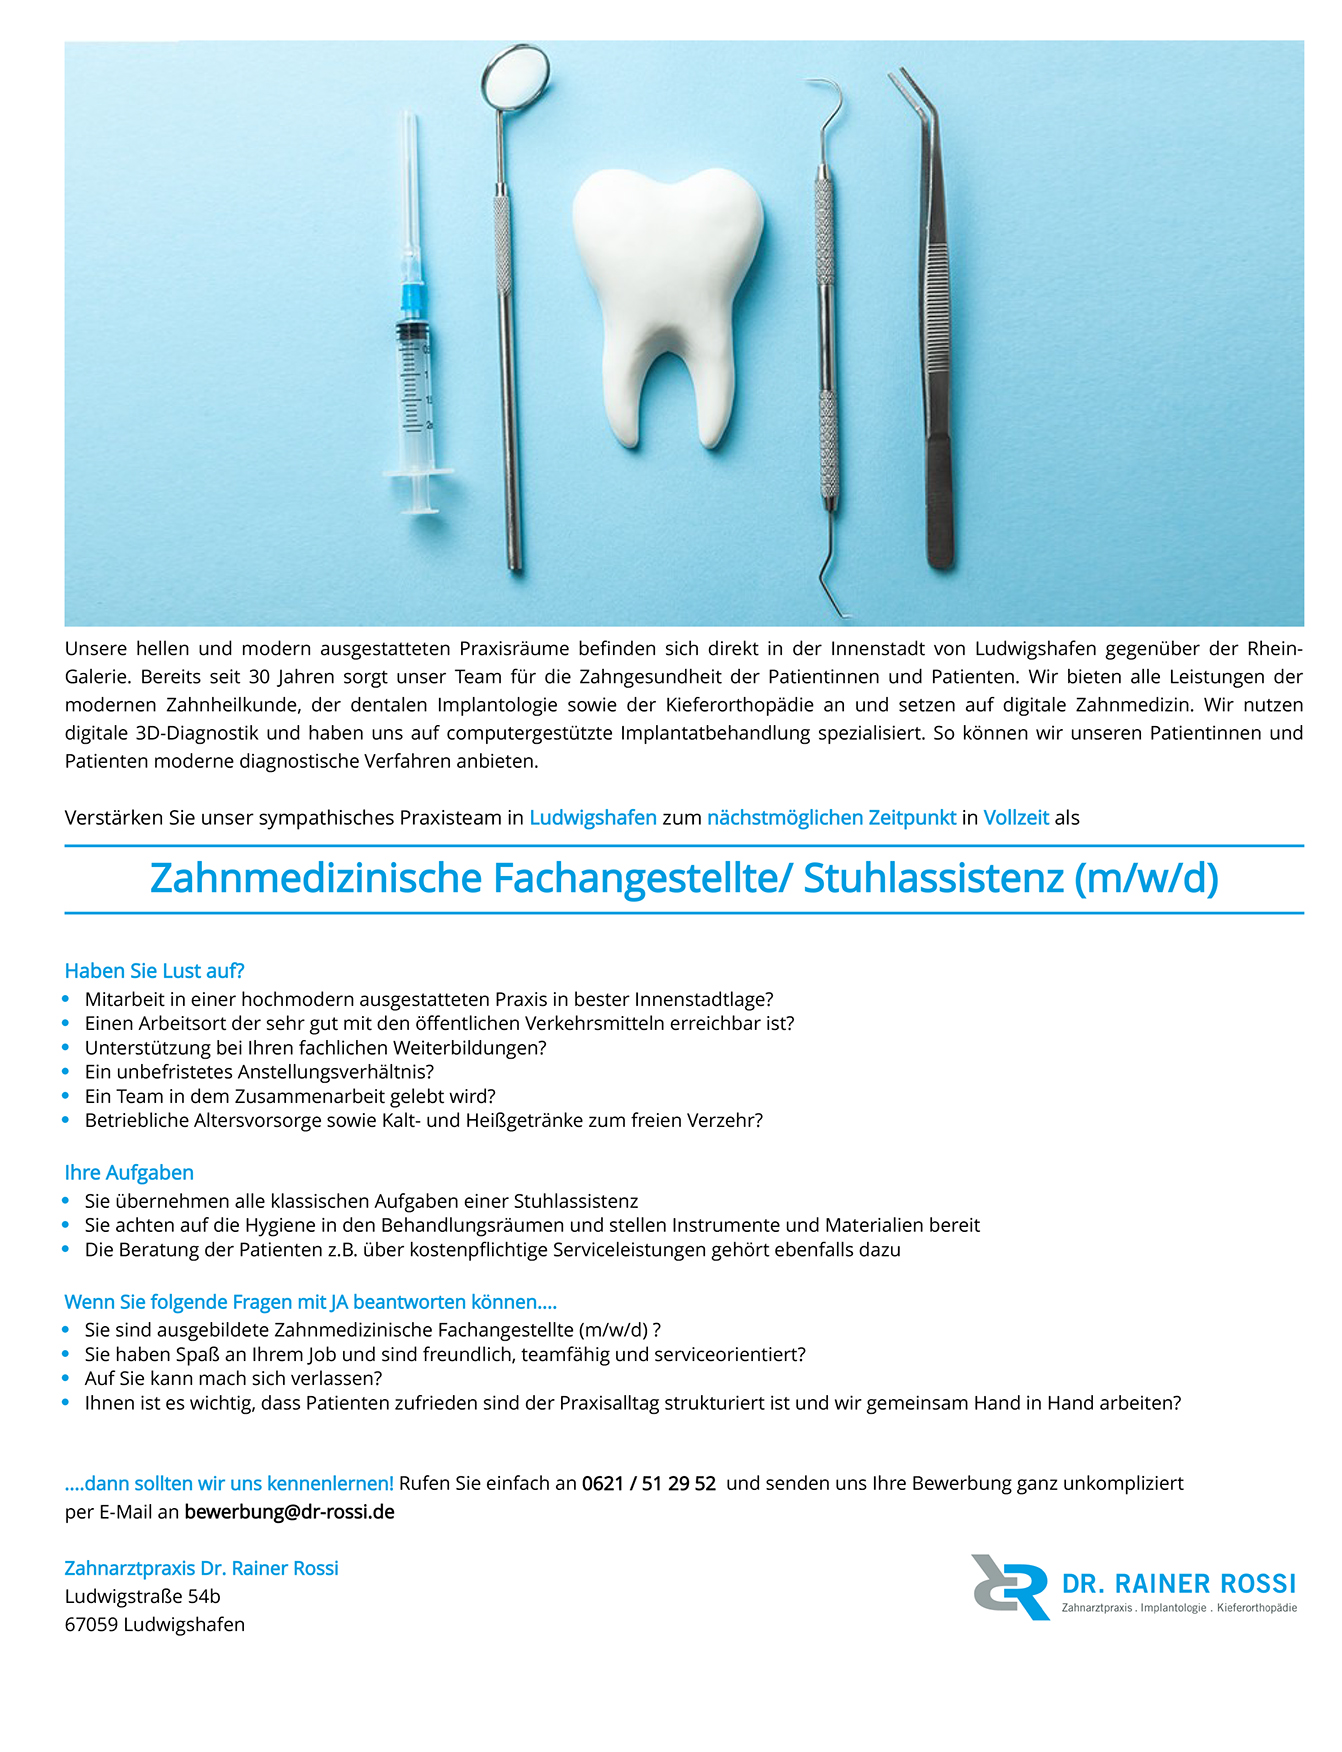 Zahnmedizinische Fachangestellte / Stuhlassitenz (m/w/d)